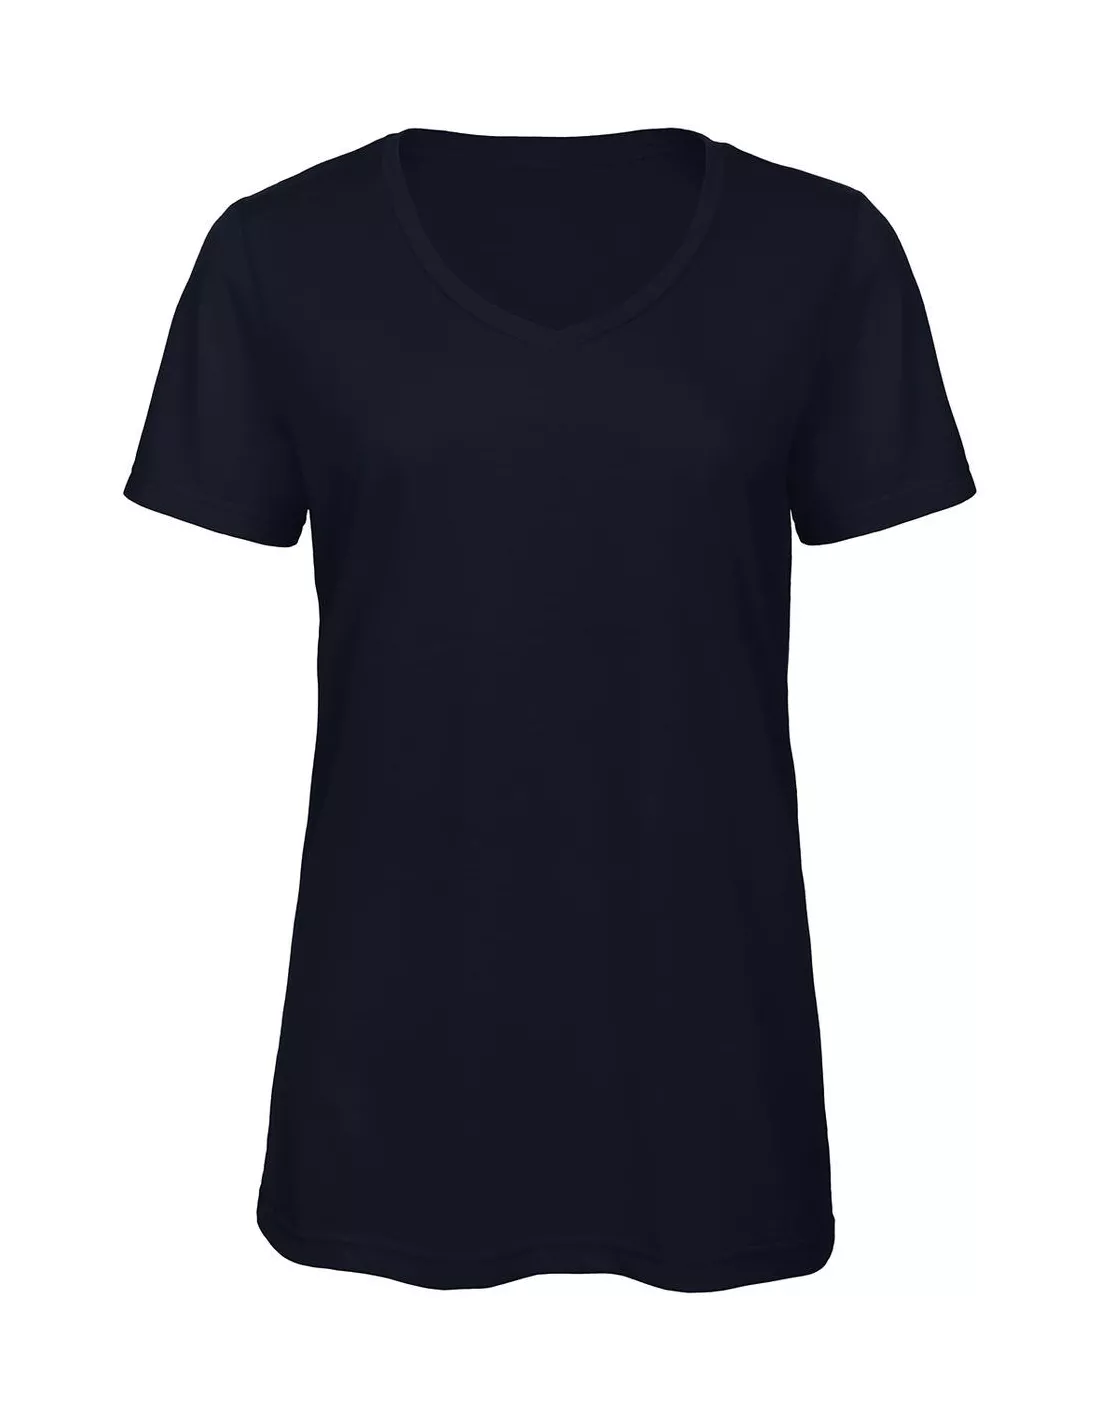 Camiseta V Triblend/women